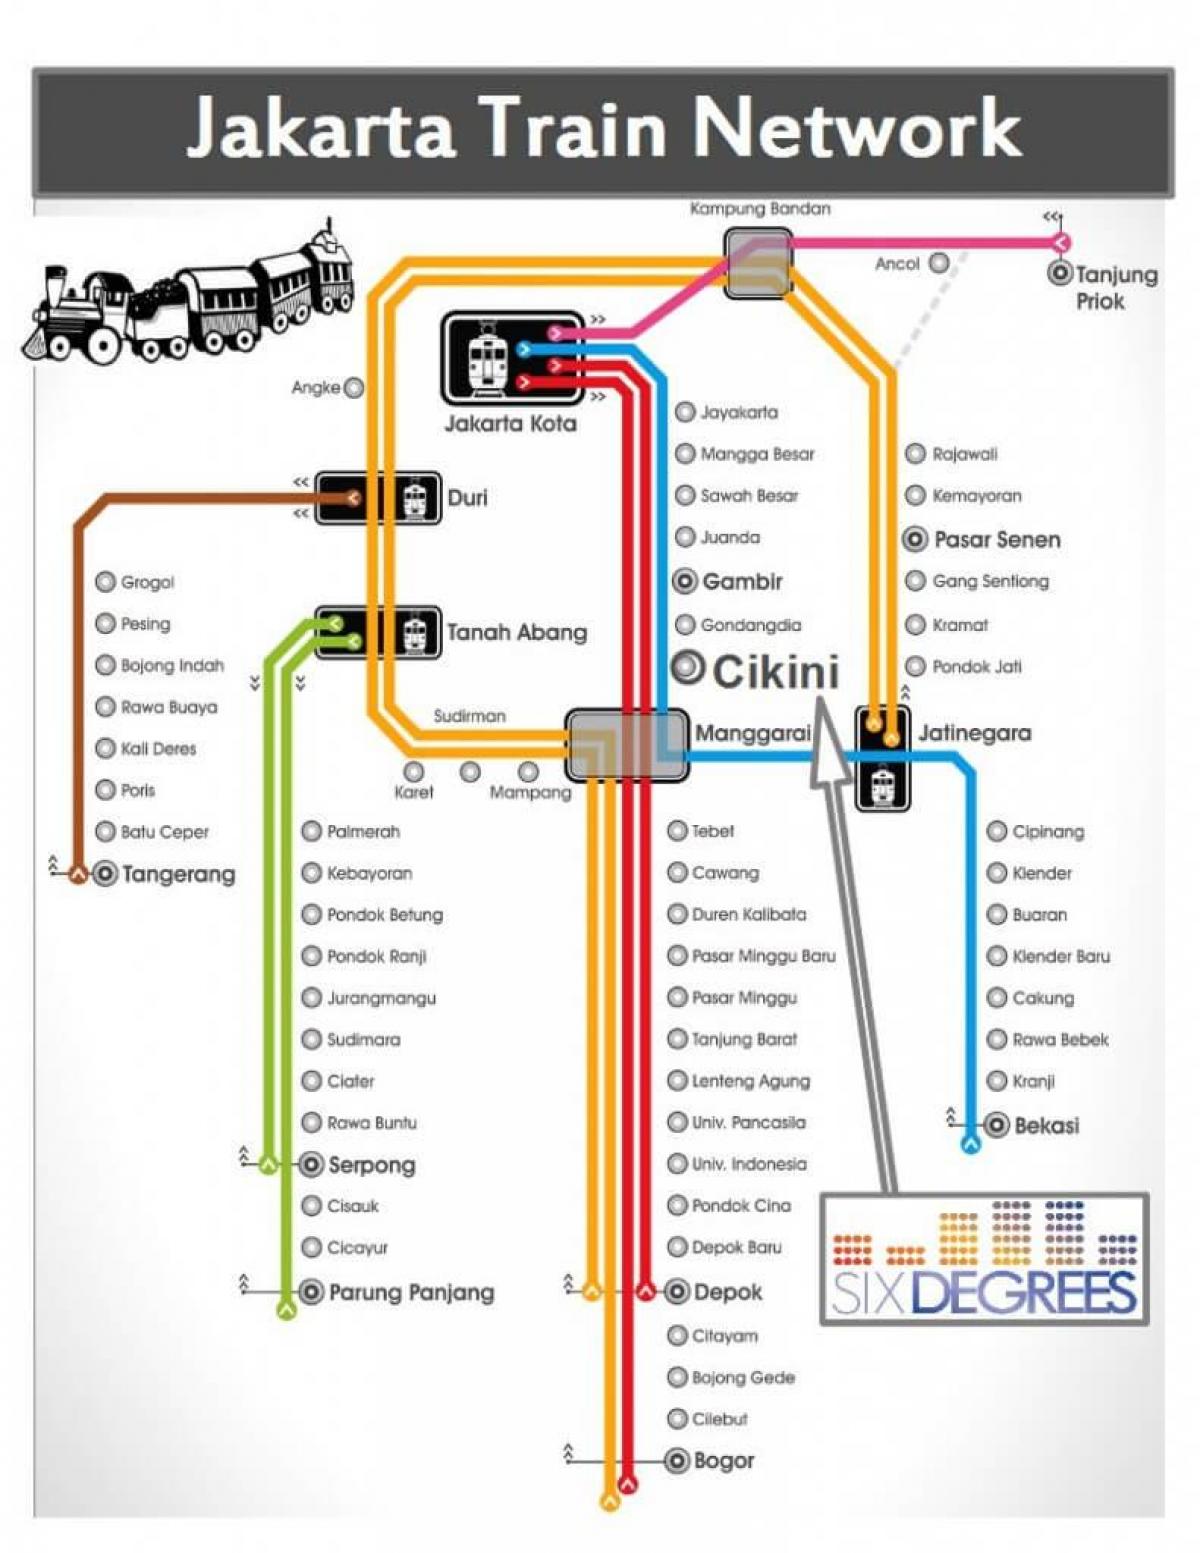 karta željezničkog kolodvora u Jakarta 